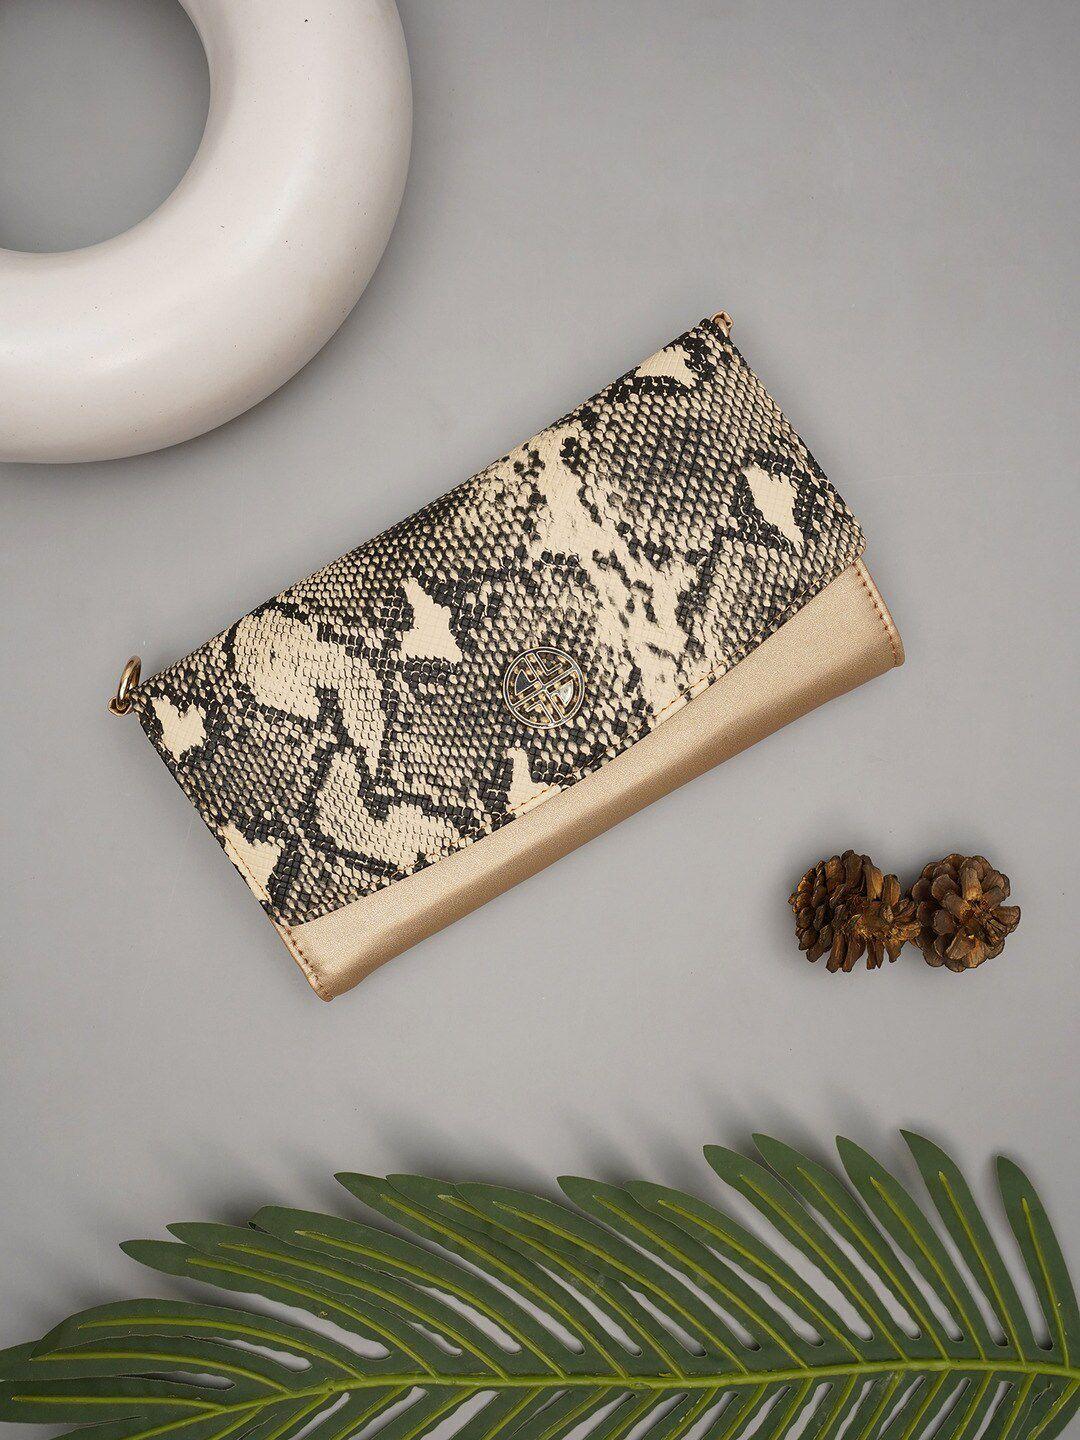 carlton london animal skin printed two fold wallet